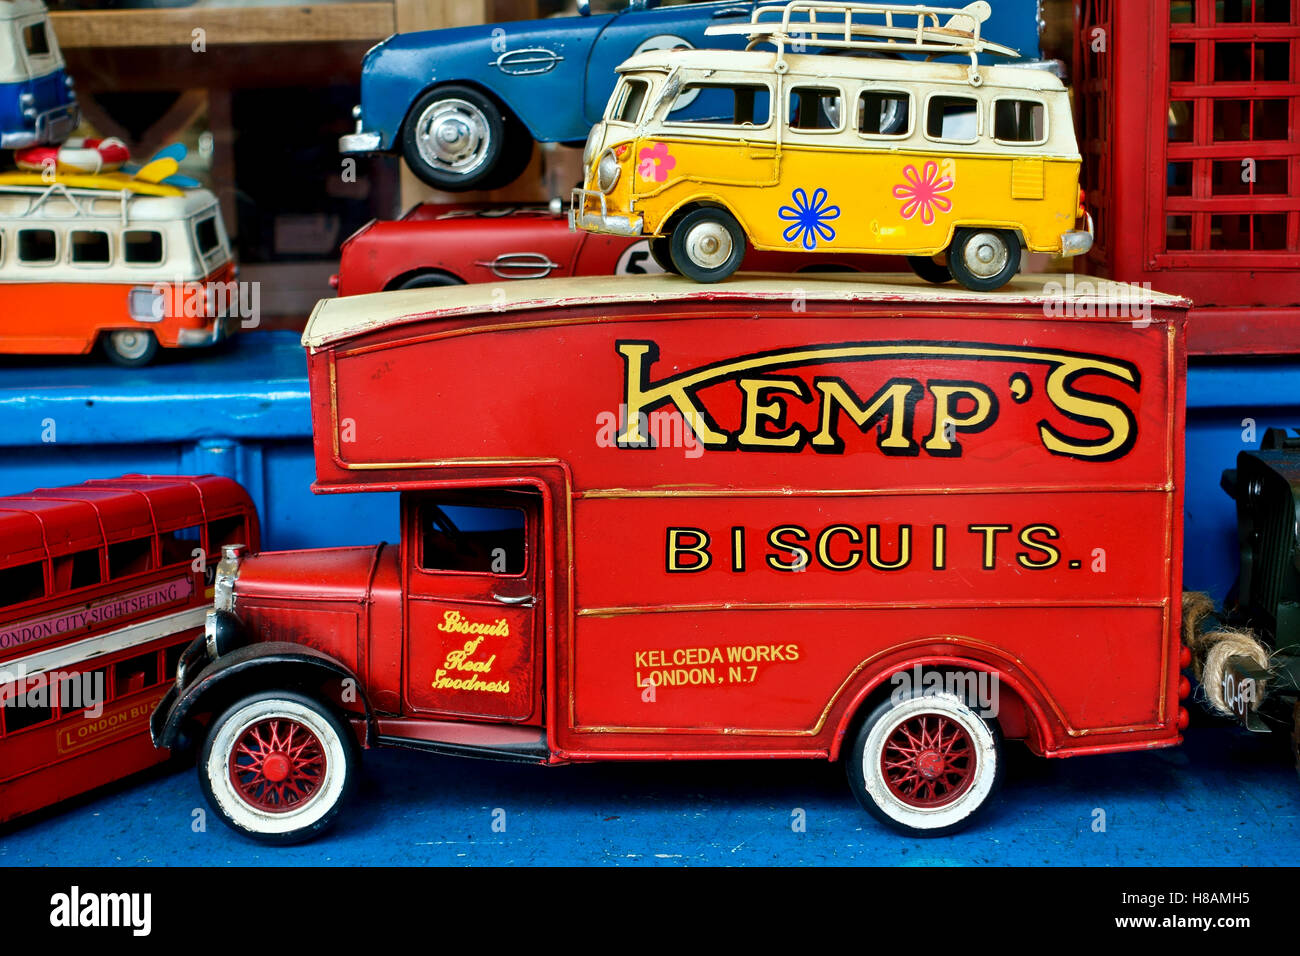 Alte Spielzeugfahrzeuge in leuchtenden Farben in einem  Spielzeugfensterladen. Portobello Road Markt. London, England,  Großbritannien, Großbritannien, Europa. Nahaufnahme Stockfotografie - Alamy